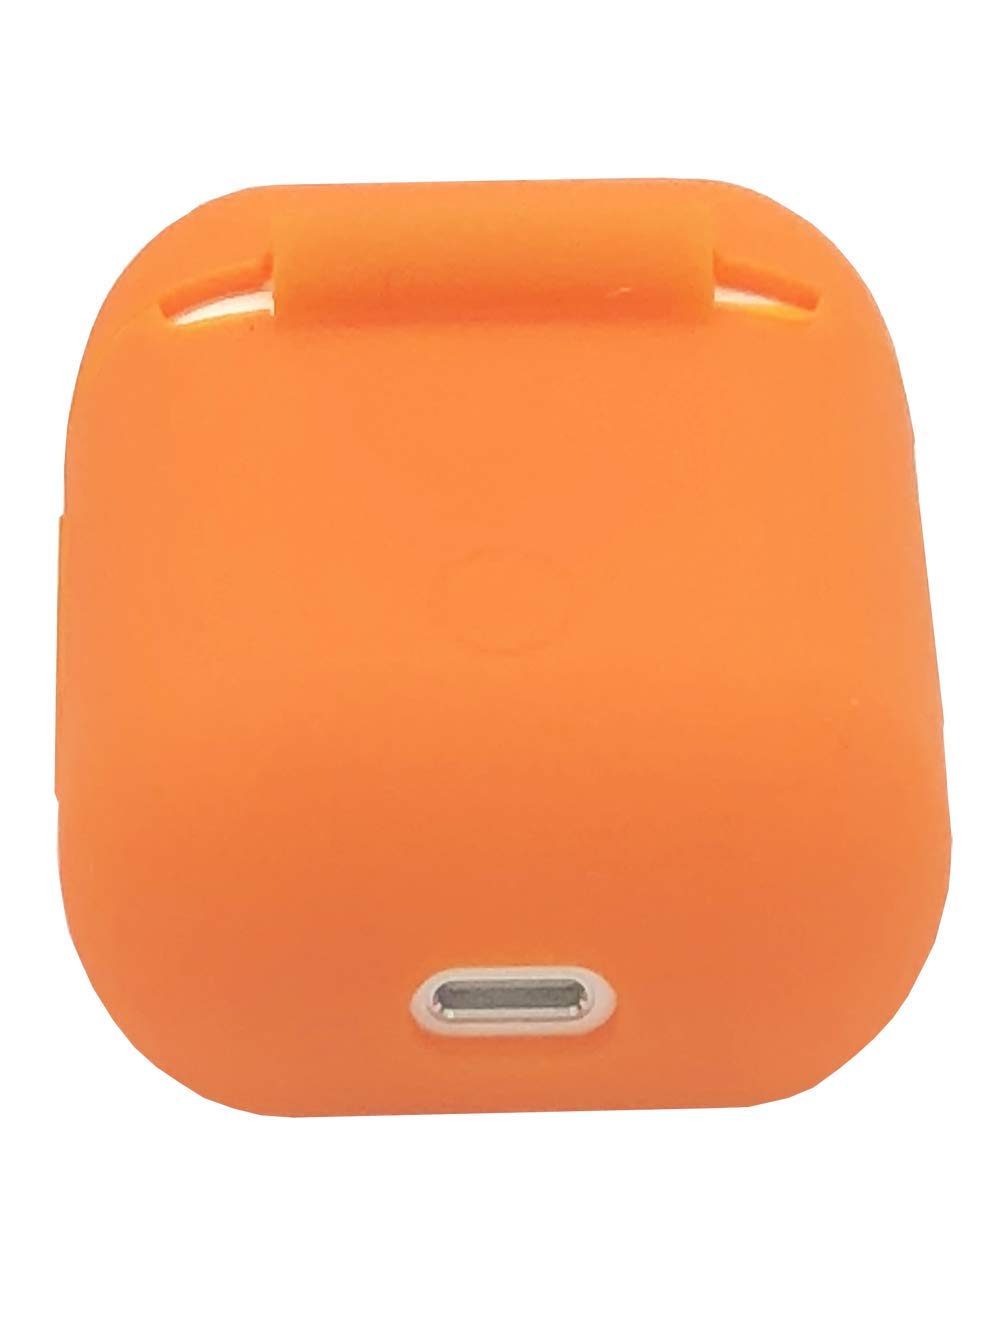 Bao case silicon cho tai nghe Apple Airpods / Earpods hiệu Hotcase (siêu mỏng, bảo vệ toàn diện, chống trầy, chống bụi) - Hàng chính hãng